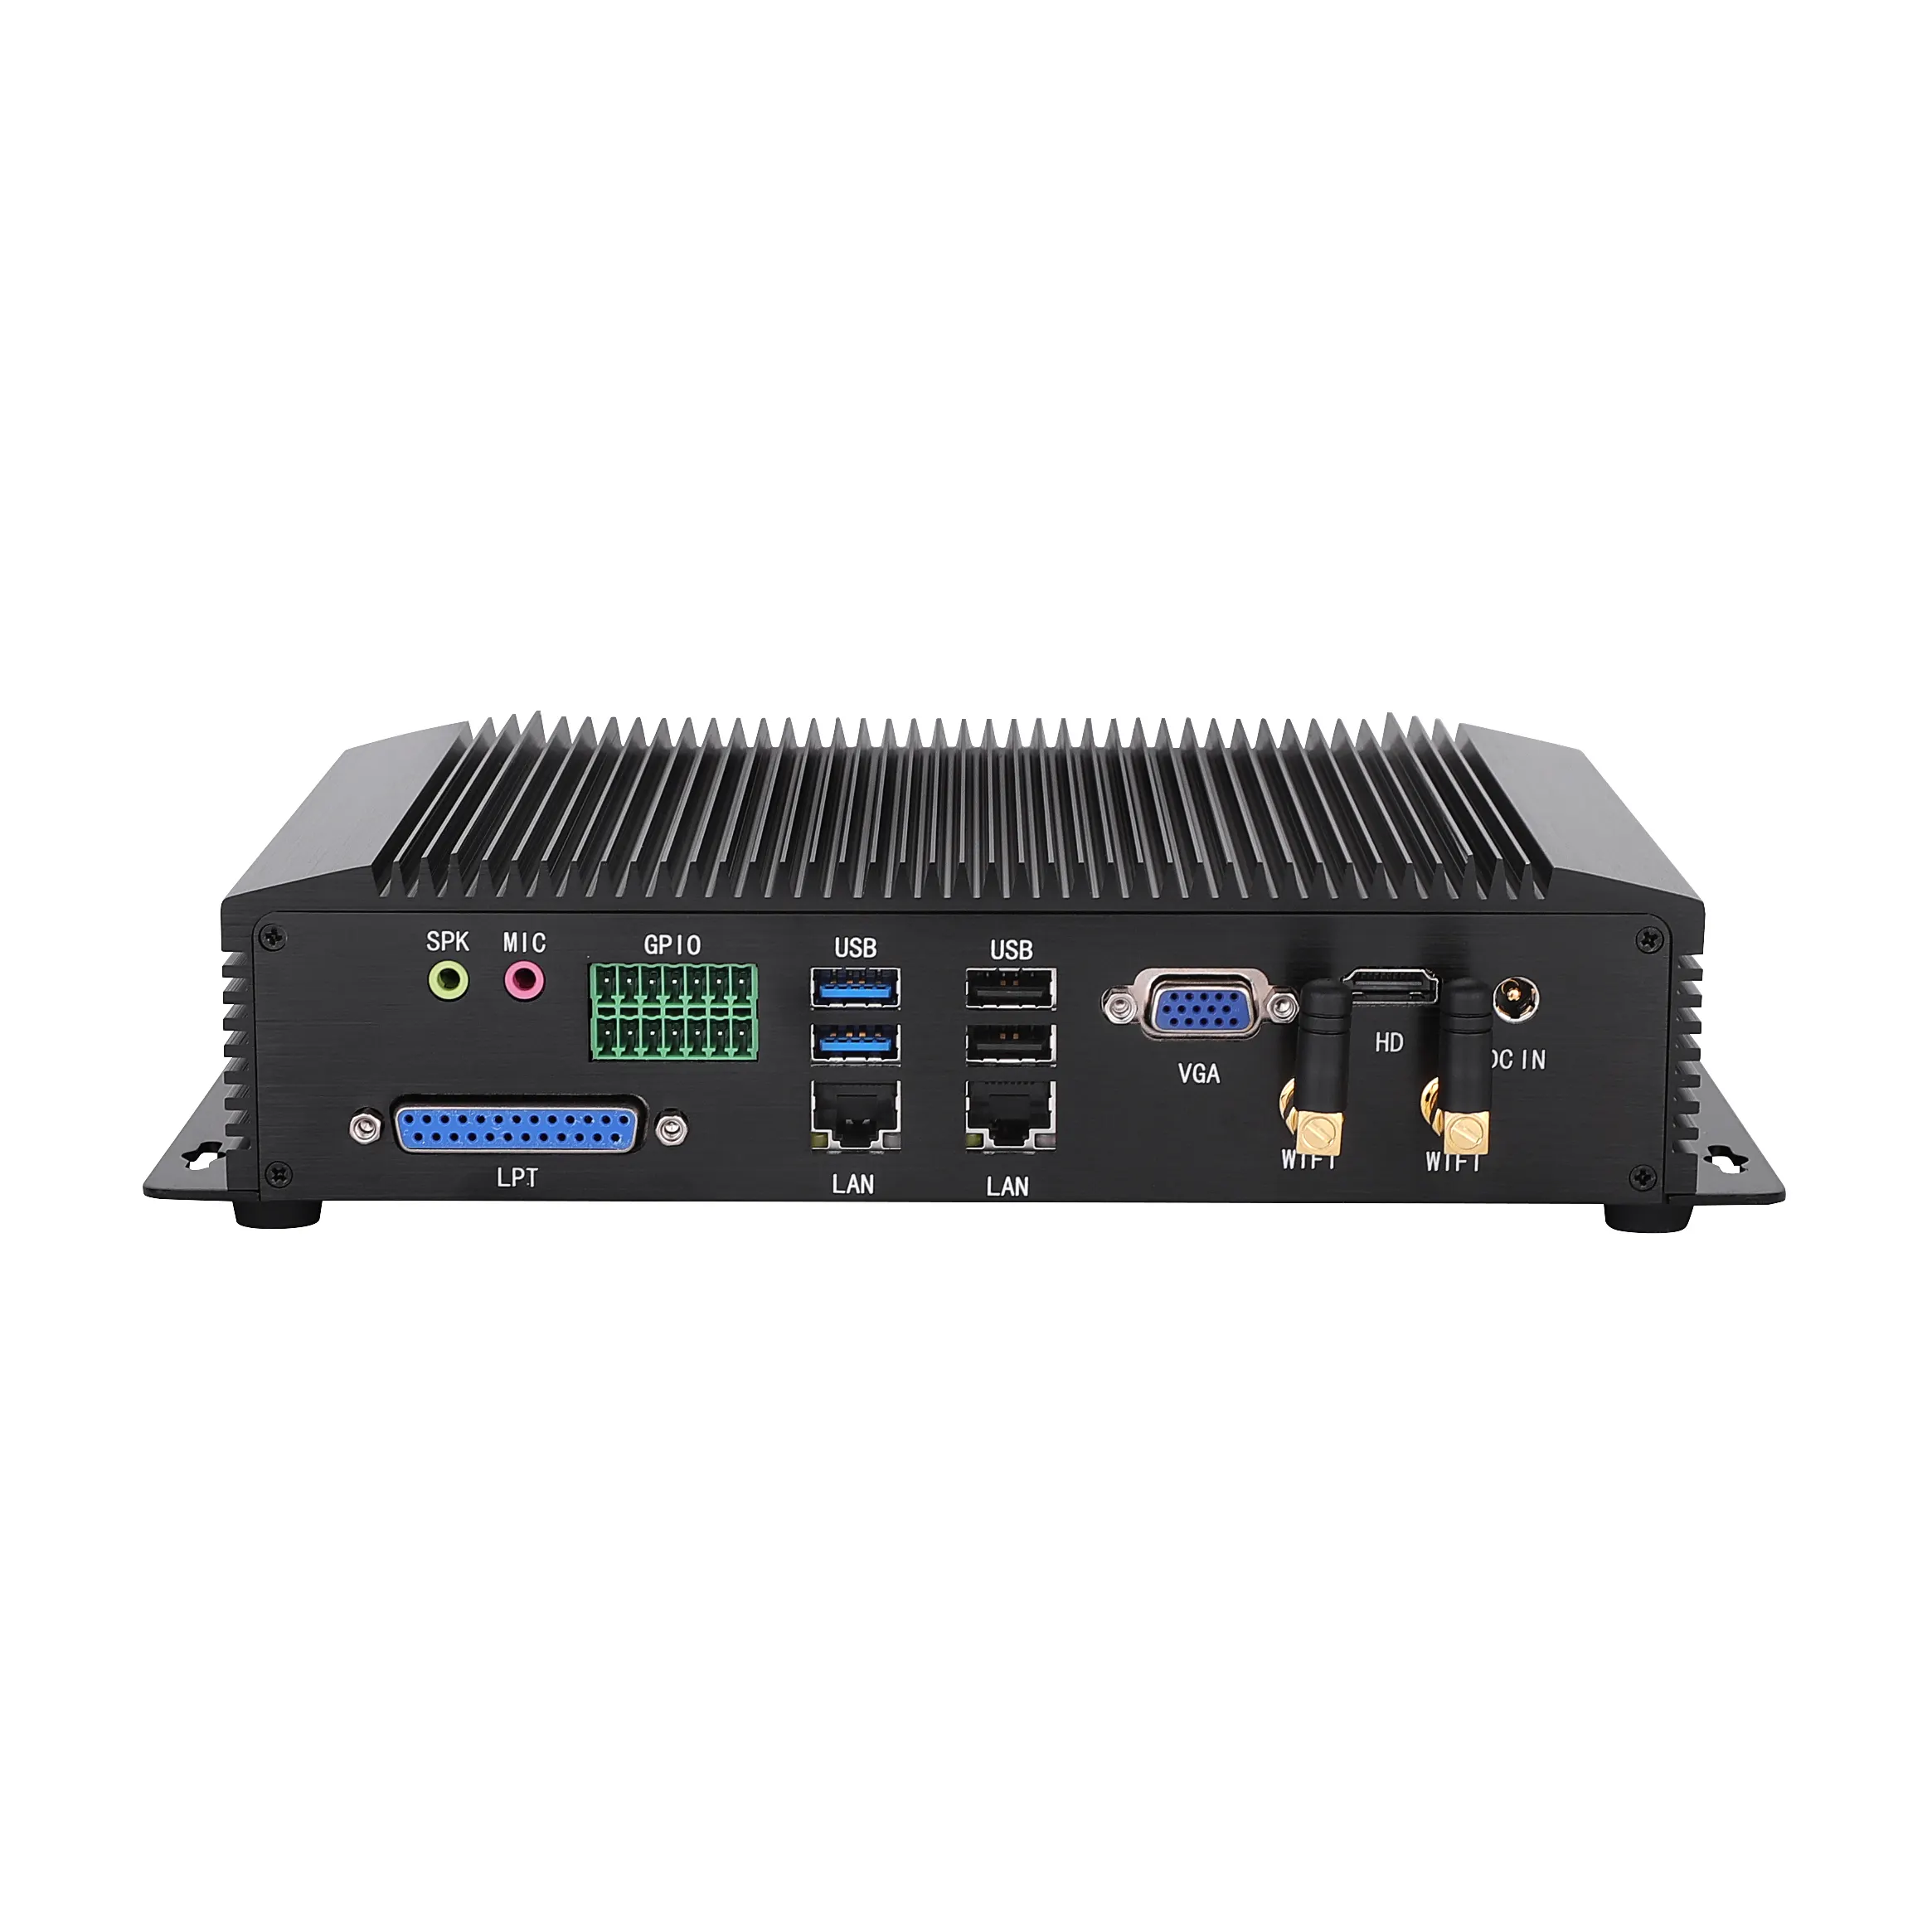 Mini Desktop Industrial PC Computer Core i3 i5 i7 Dual NIC Gigabit LAN Barebone Mini IPC 6*RS232/485 8*USB/HDM-I VGA/PS2/LPT